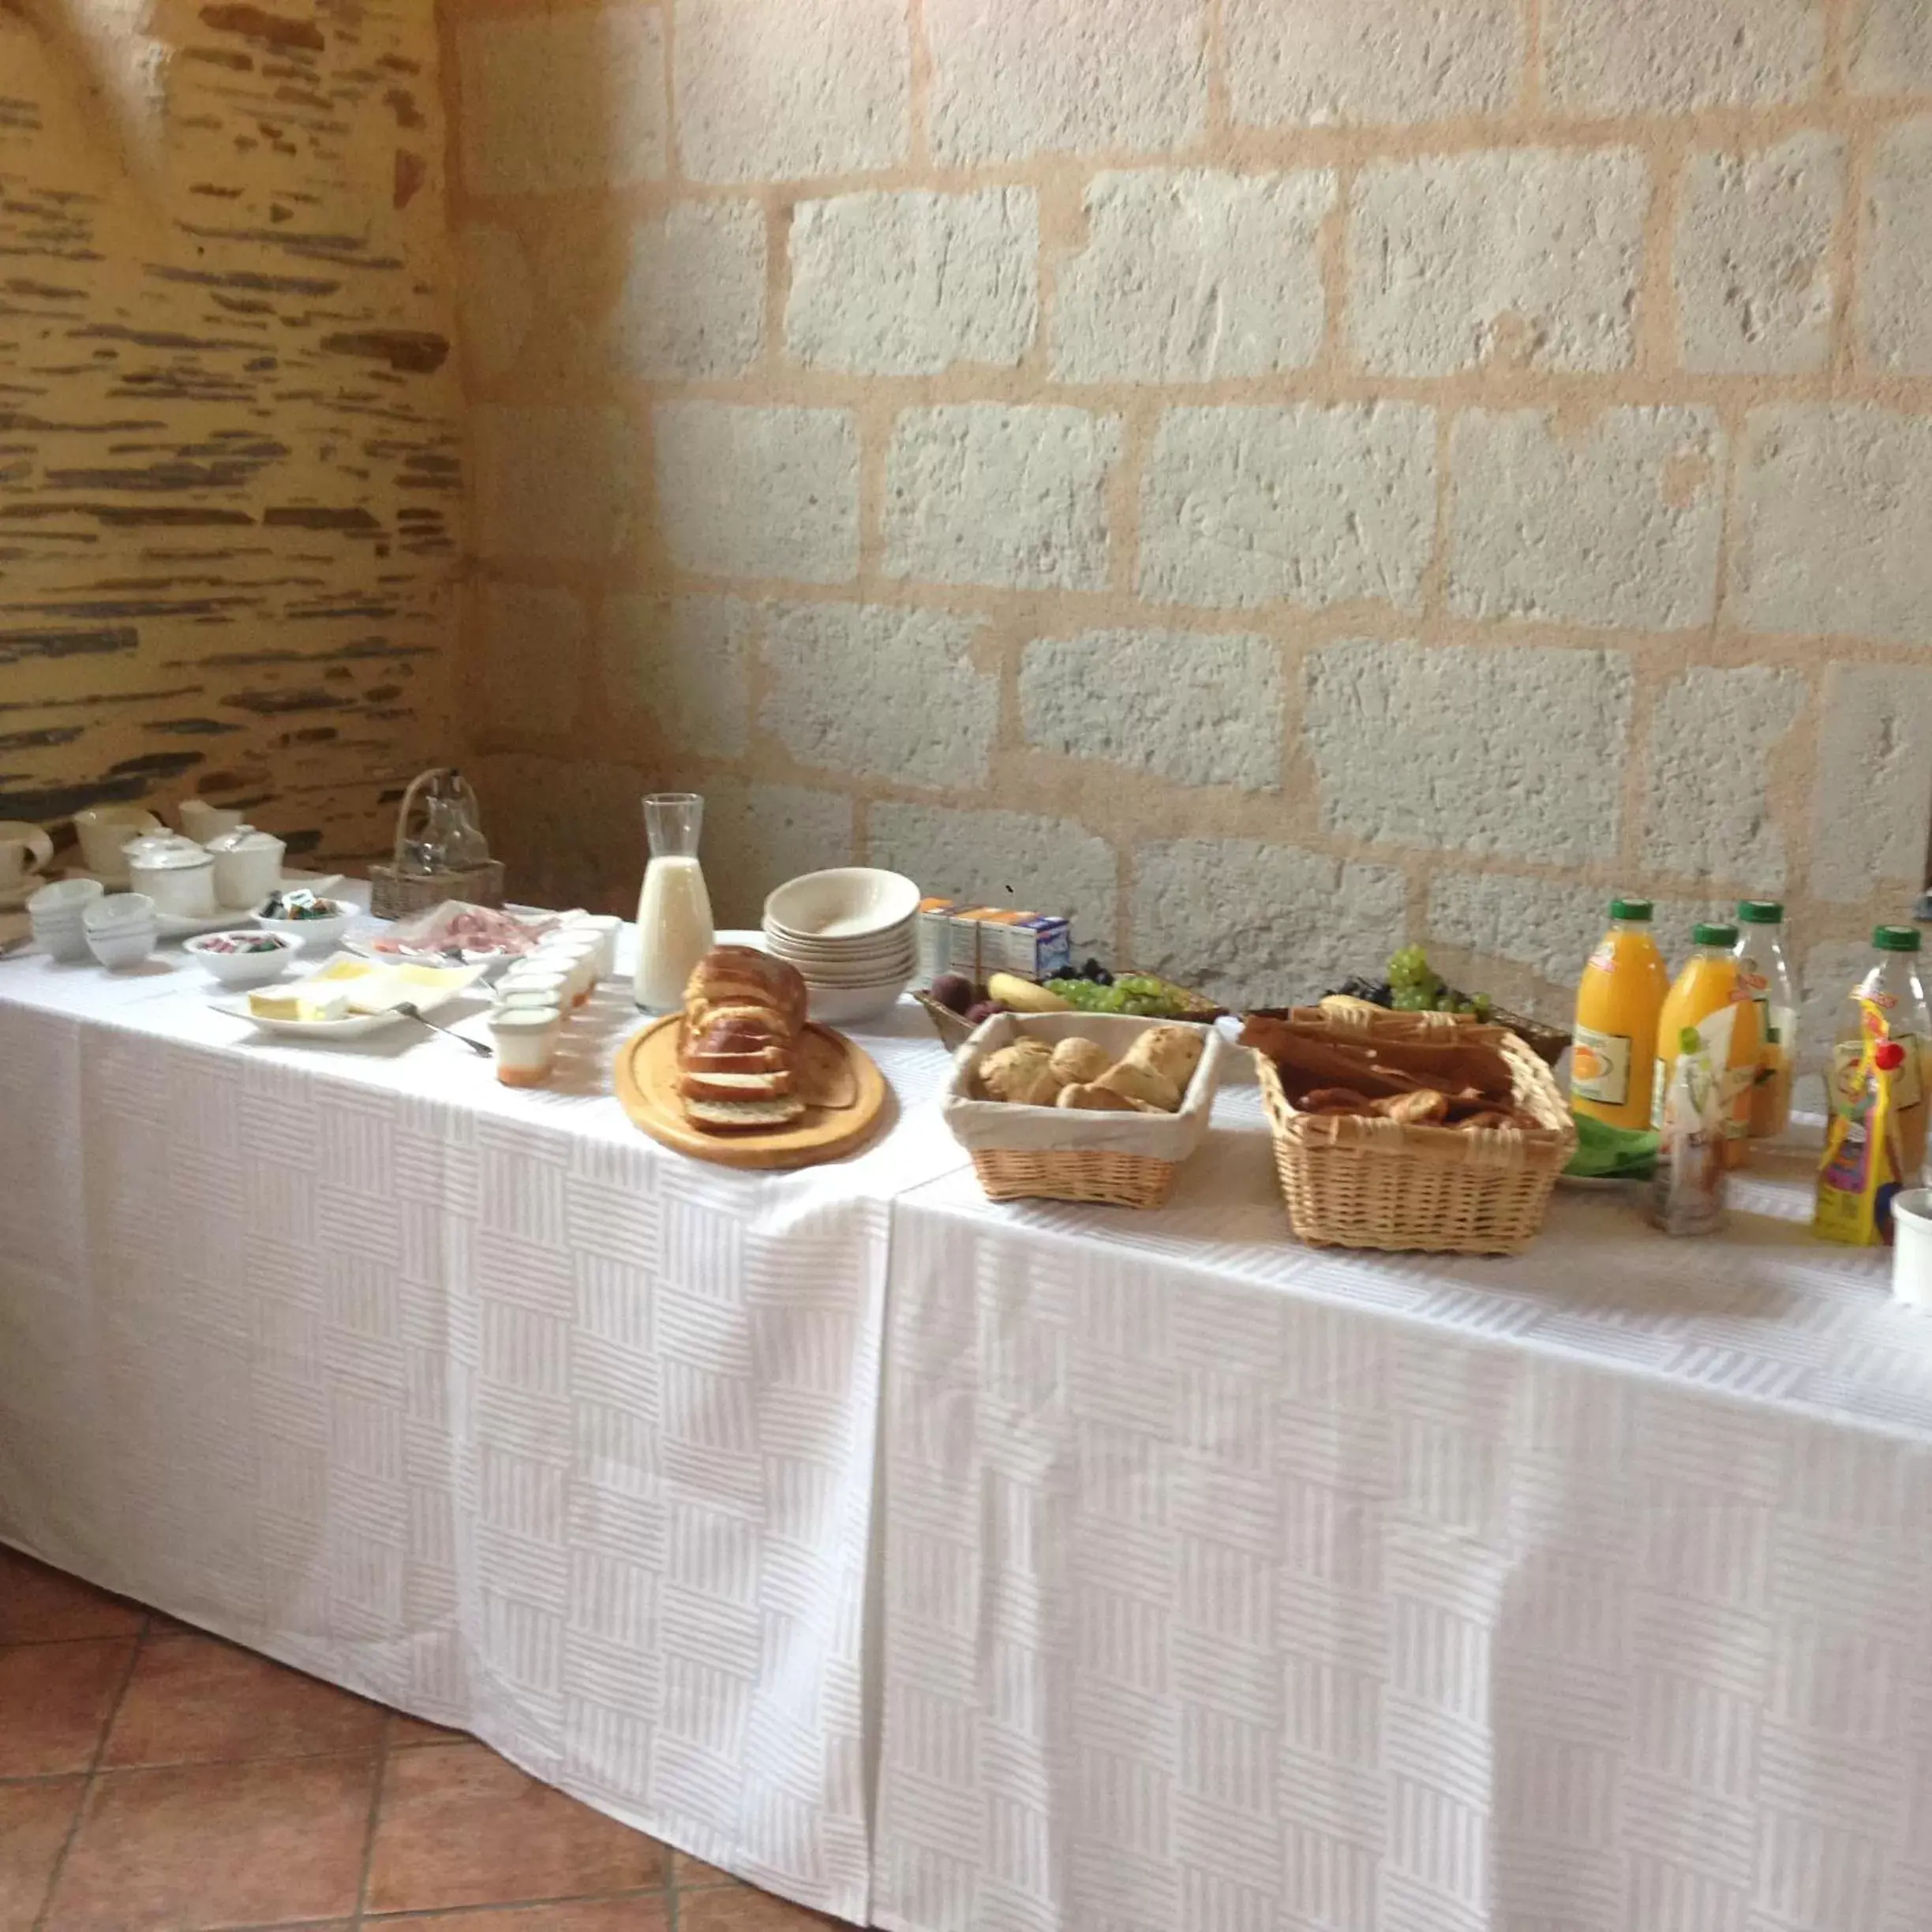 Breakfast in Château de Belle Poule